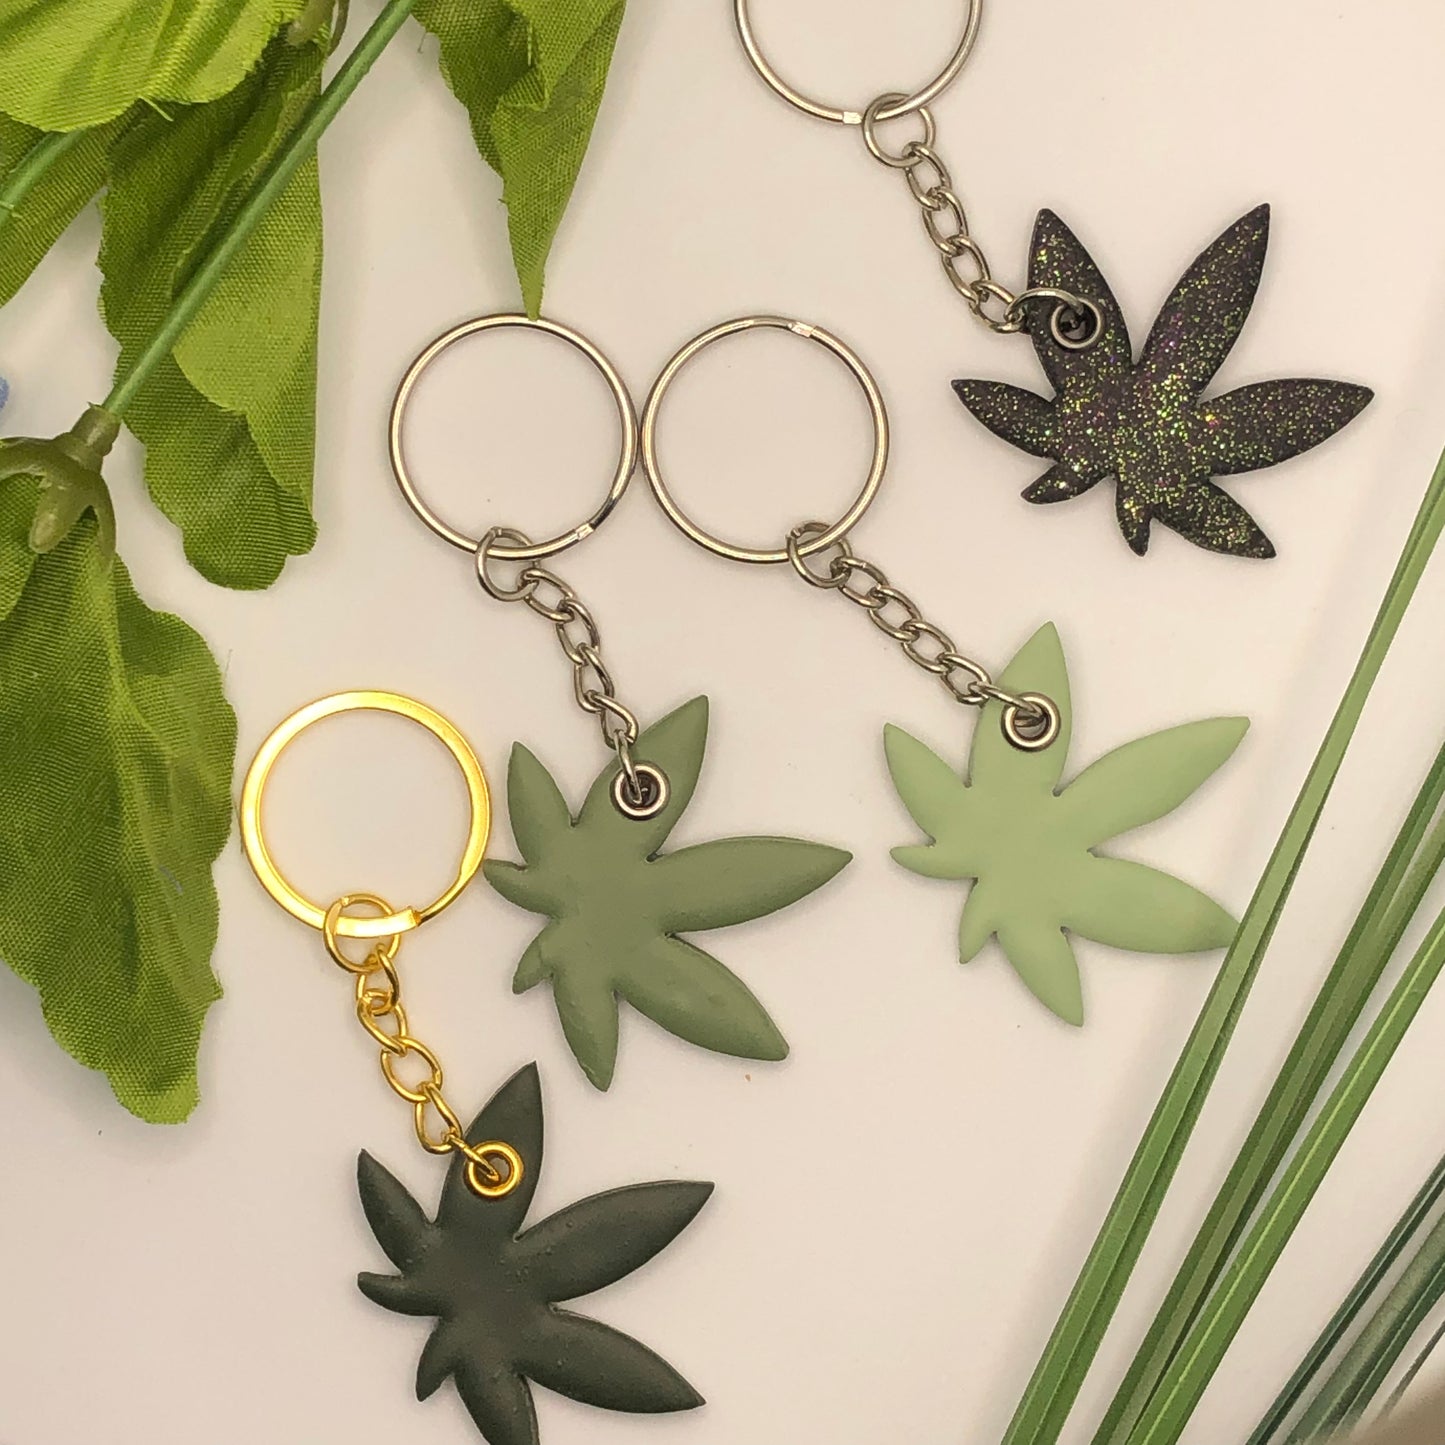 Cannabis Leaf Keychains